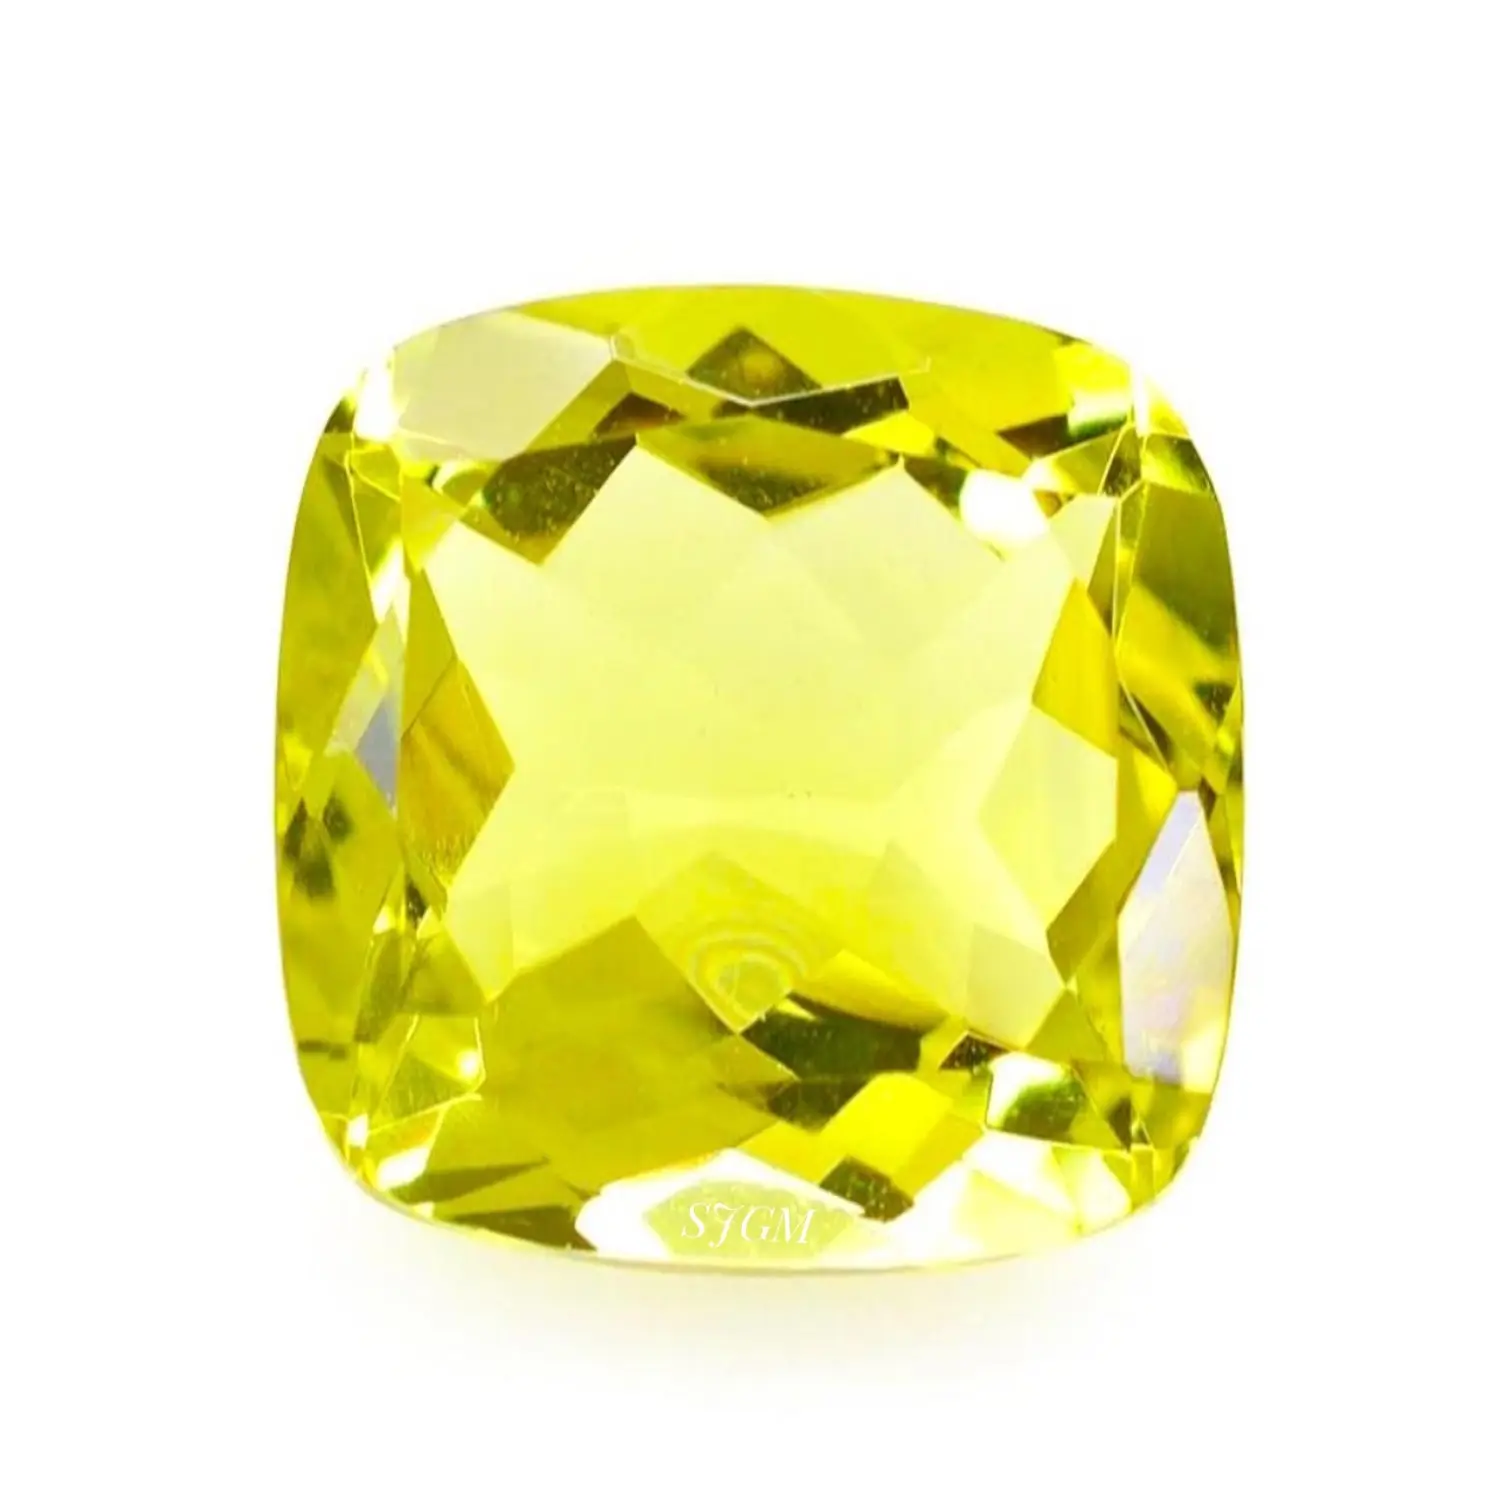 Piedra preciosa suelta facetada de alta calidad por quilate, al por mayor precio de fábrica, "8mm corte cojín, oro verde natural, limón, cuarzo" | IGI